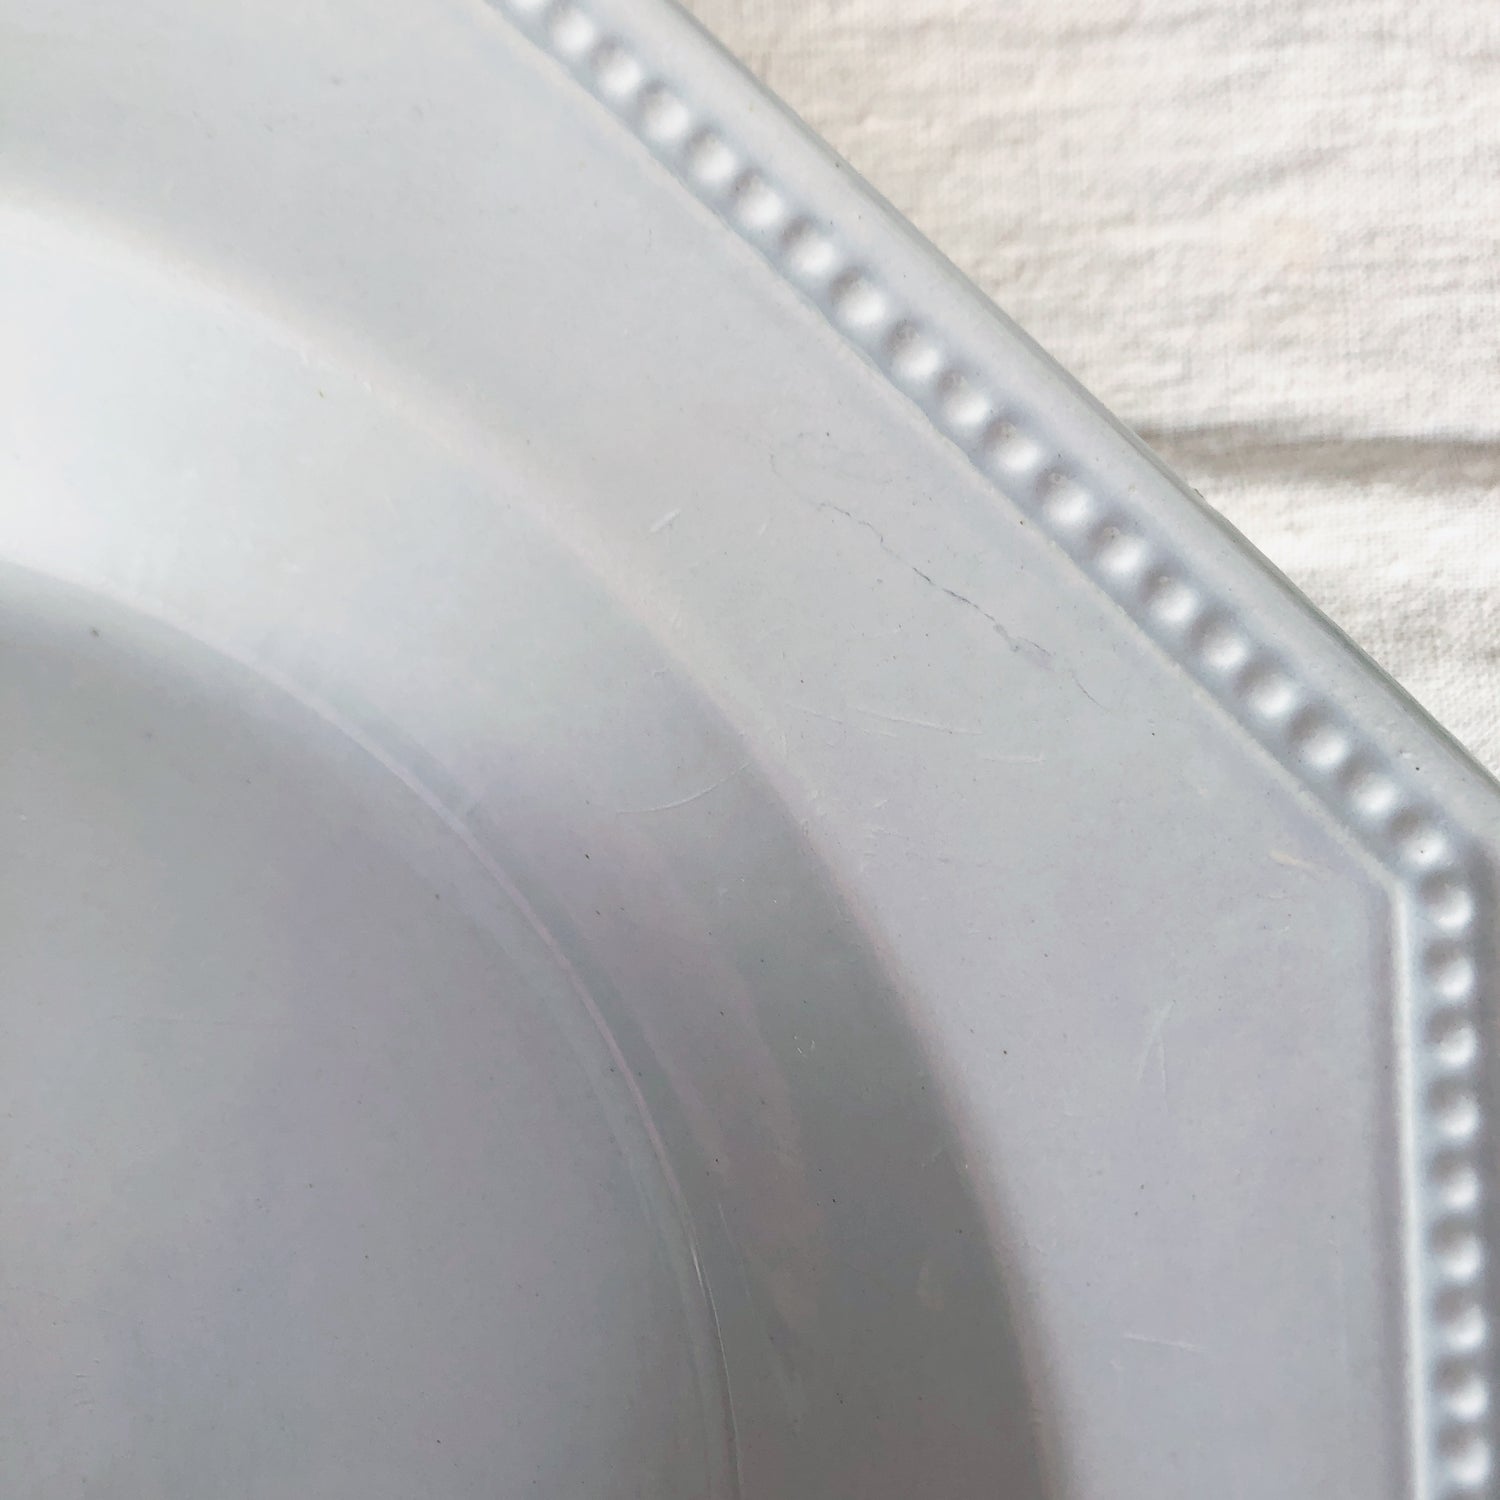 クレイユモントロー オクトゴナル クルーズプレート 深皿 パールブルー フランスアンティークプレート アンティーク食器